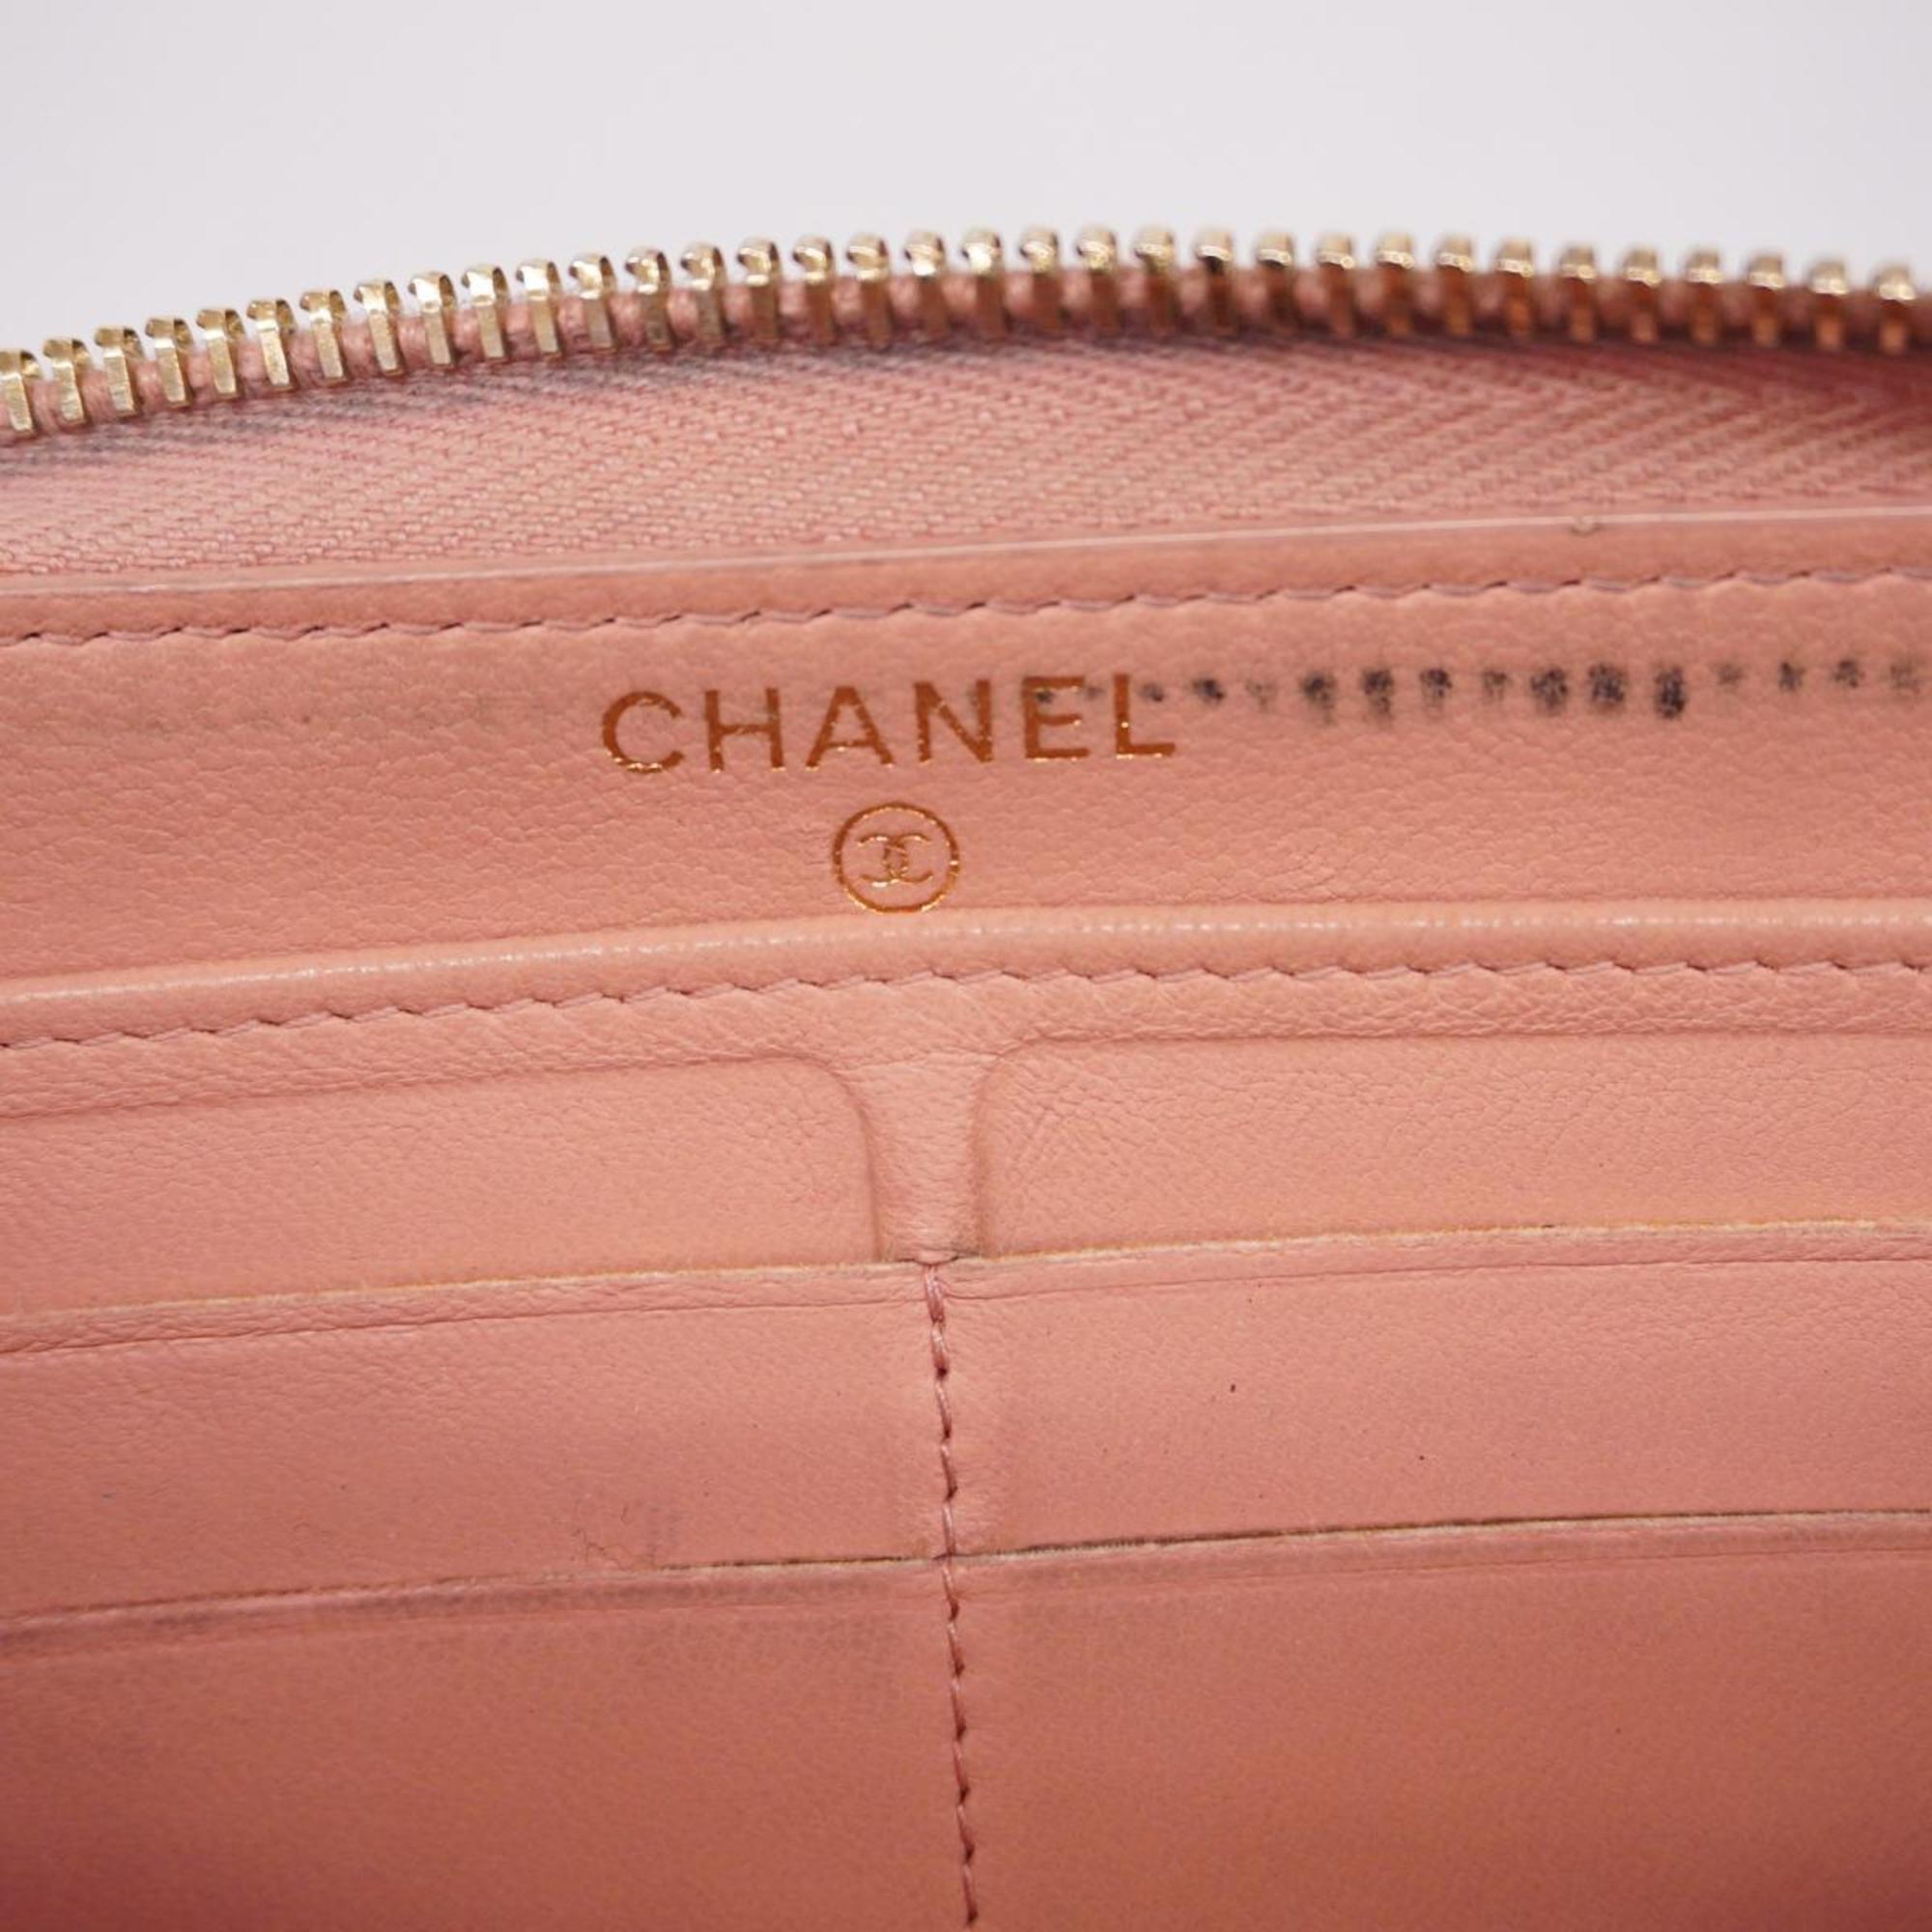 Chanel Long Wallet Matelasse Lambskin Pink Women's